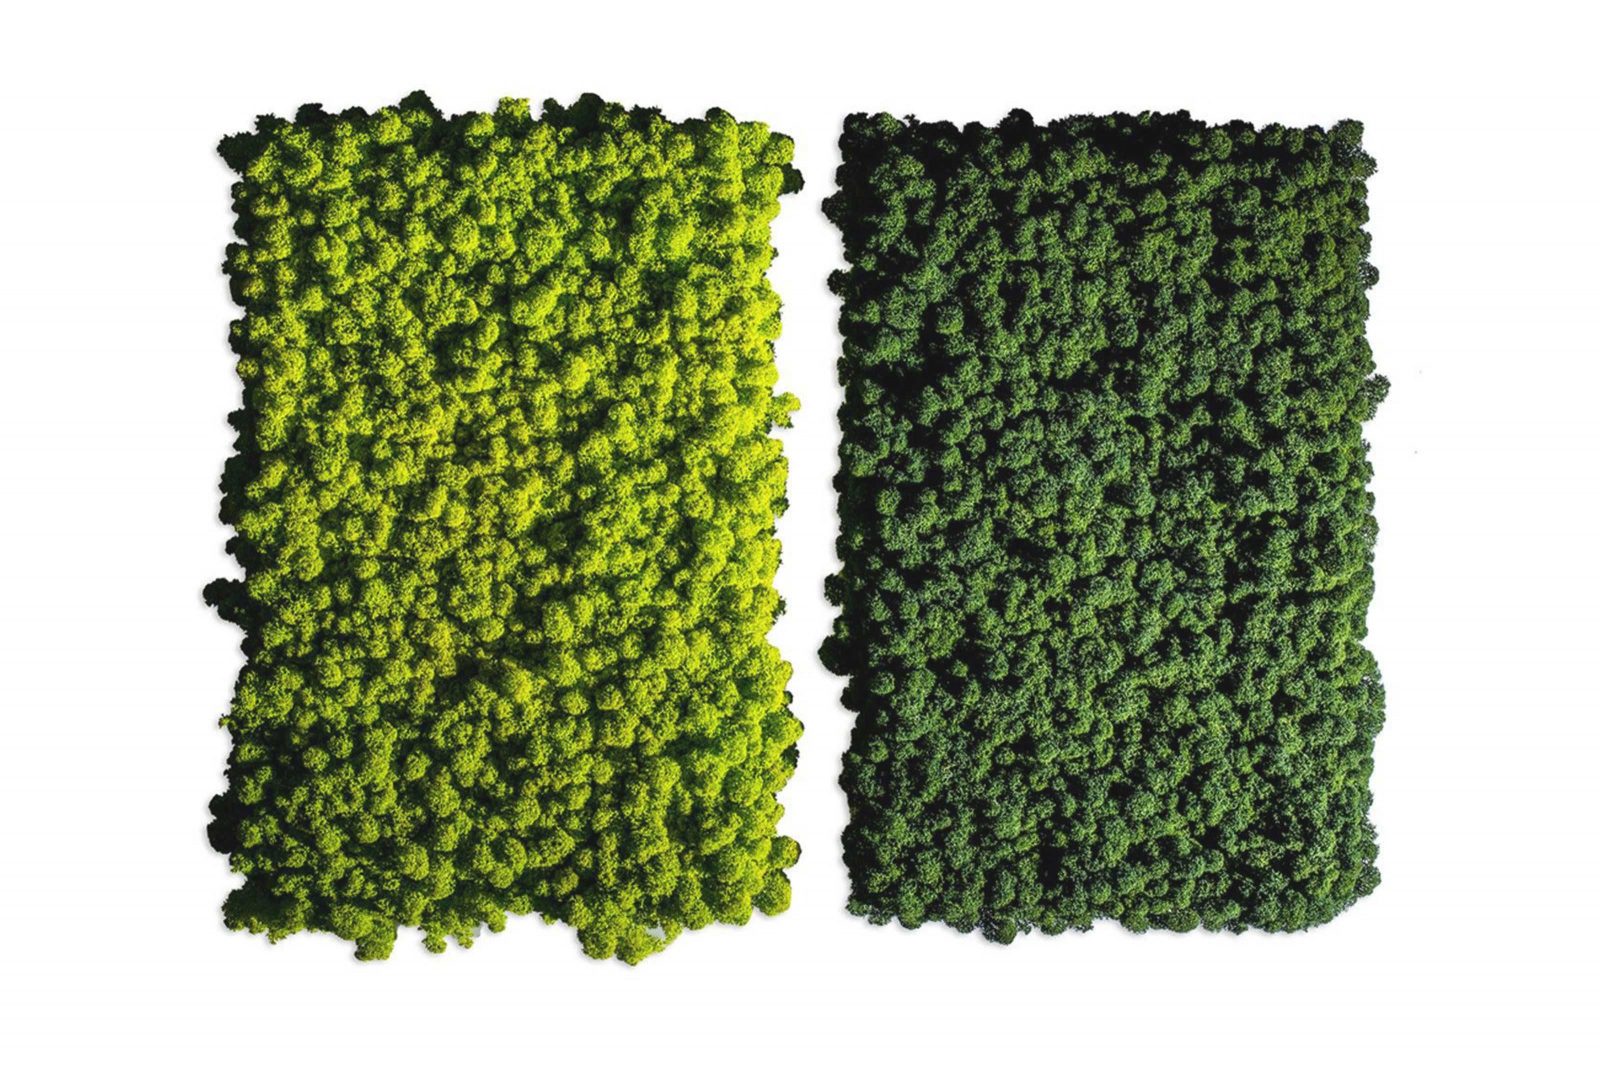 Bild zeigt zwei rechteckige Mooswandbilder in zwei verschiedenen Grüntönen